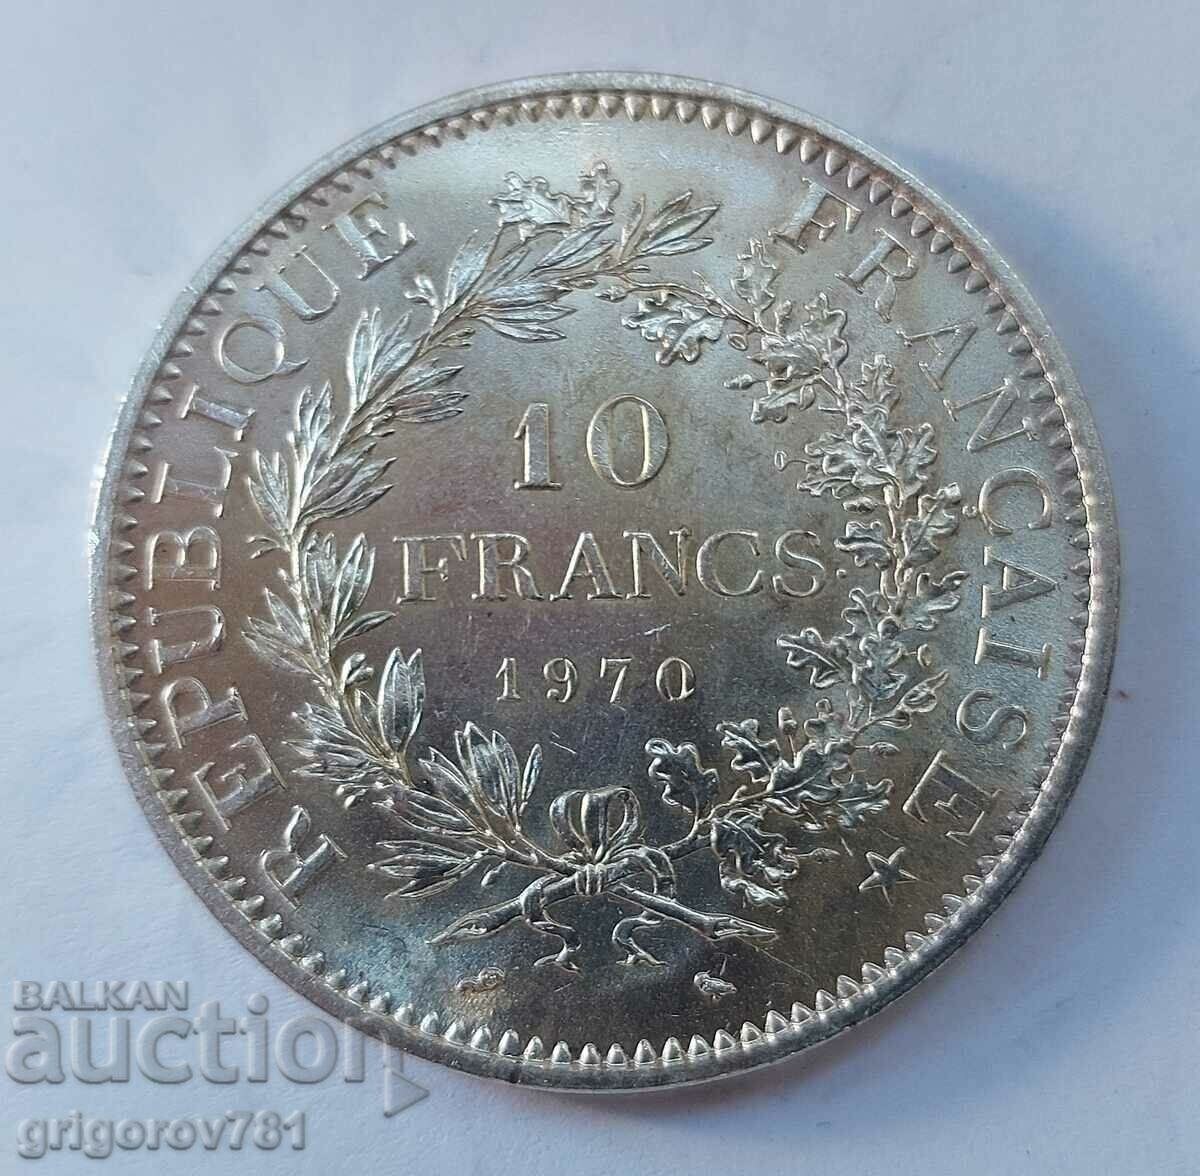 10 Φράγκα Ασήμι Γαλλία 1970 - Ασημένιο νόμισμα #28